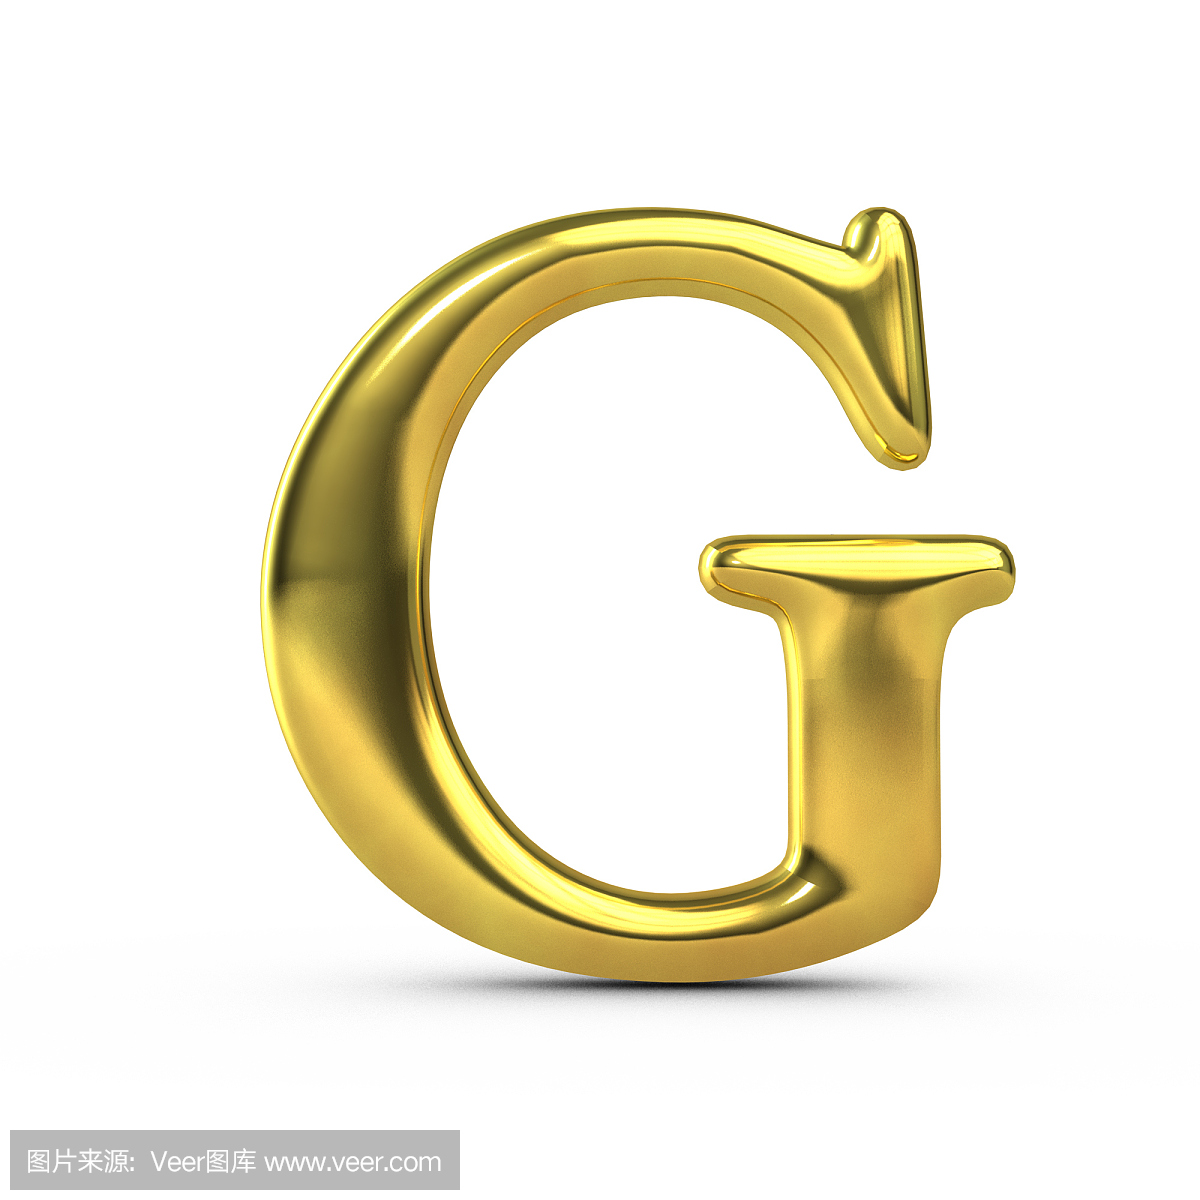 英文字母G,字母G的,字母G,G